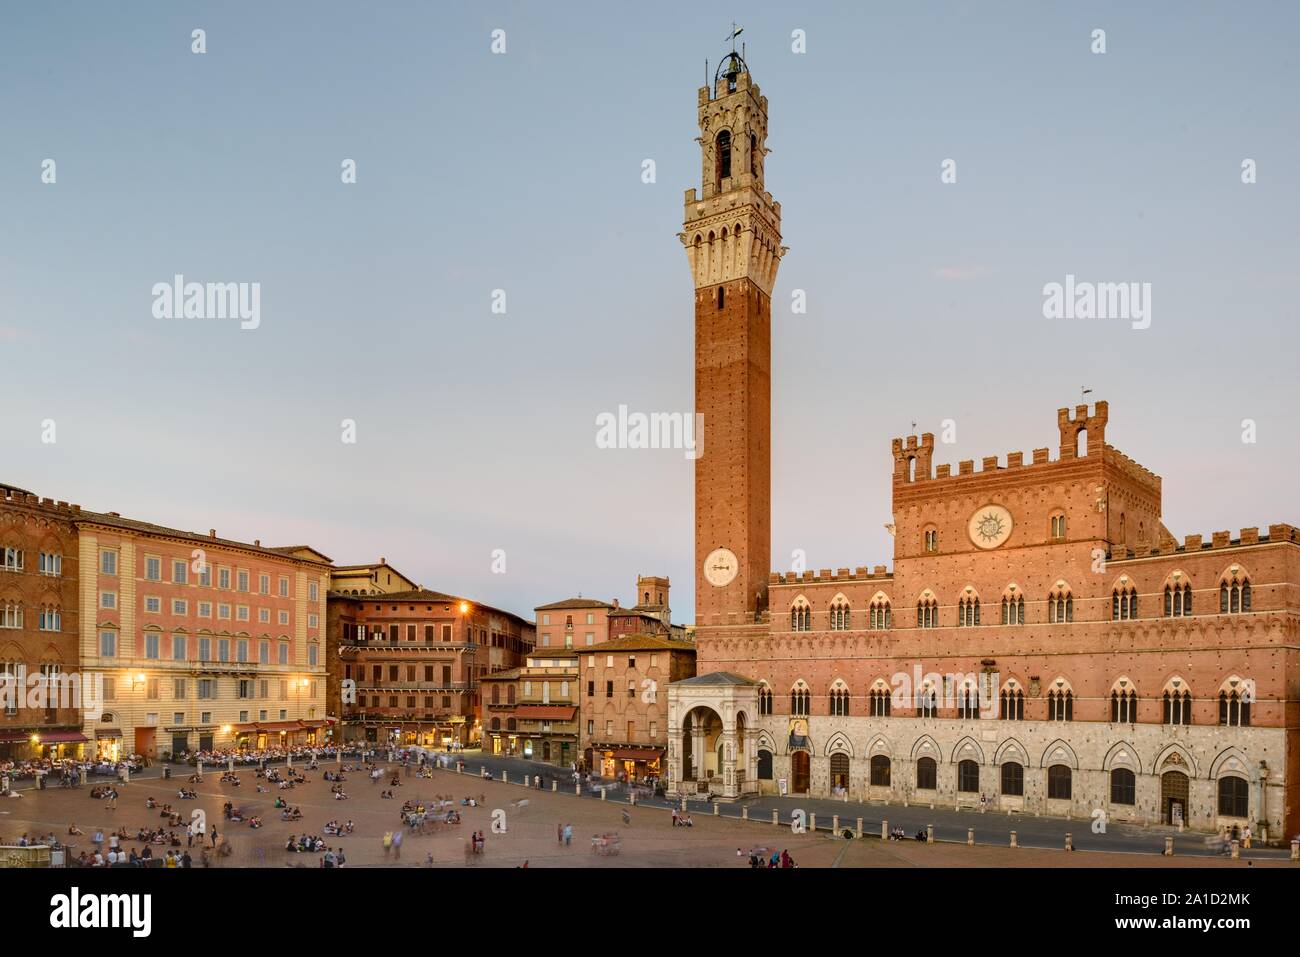 Die Piazza del Campo ist der bedeutendste Platz der toskanischen Stadt Siena, deren Zentrum er bildet. Der Platz ist bekannt durch seine beeindruckend Stock Photo